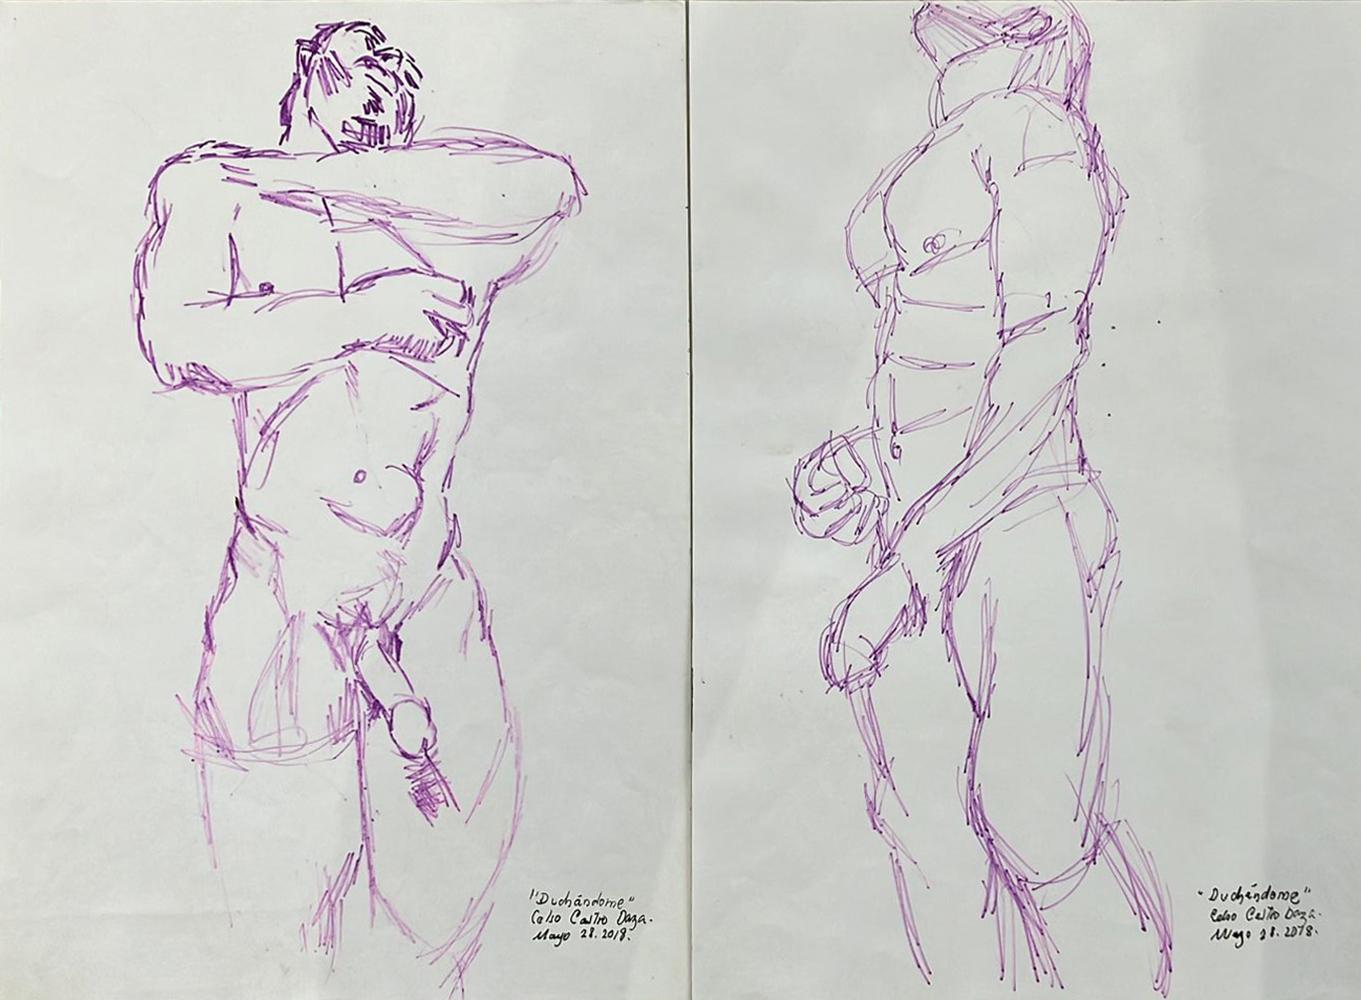 Celso José Castro Daza Nude - "Duchándome, May 28th", Watercolor Diptych, 2018